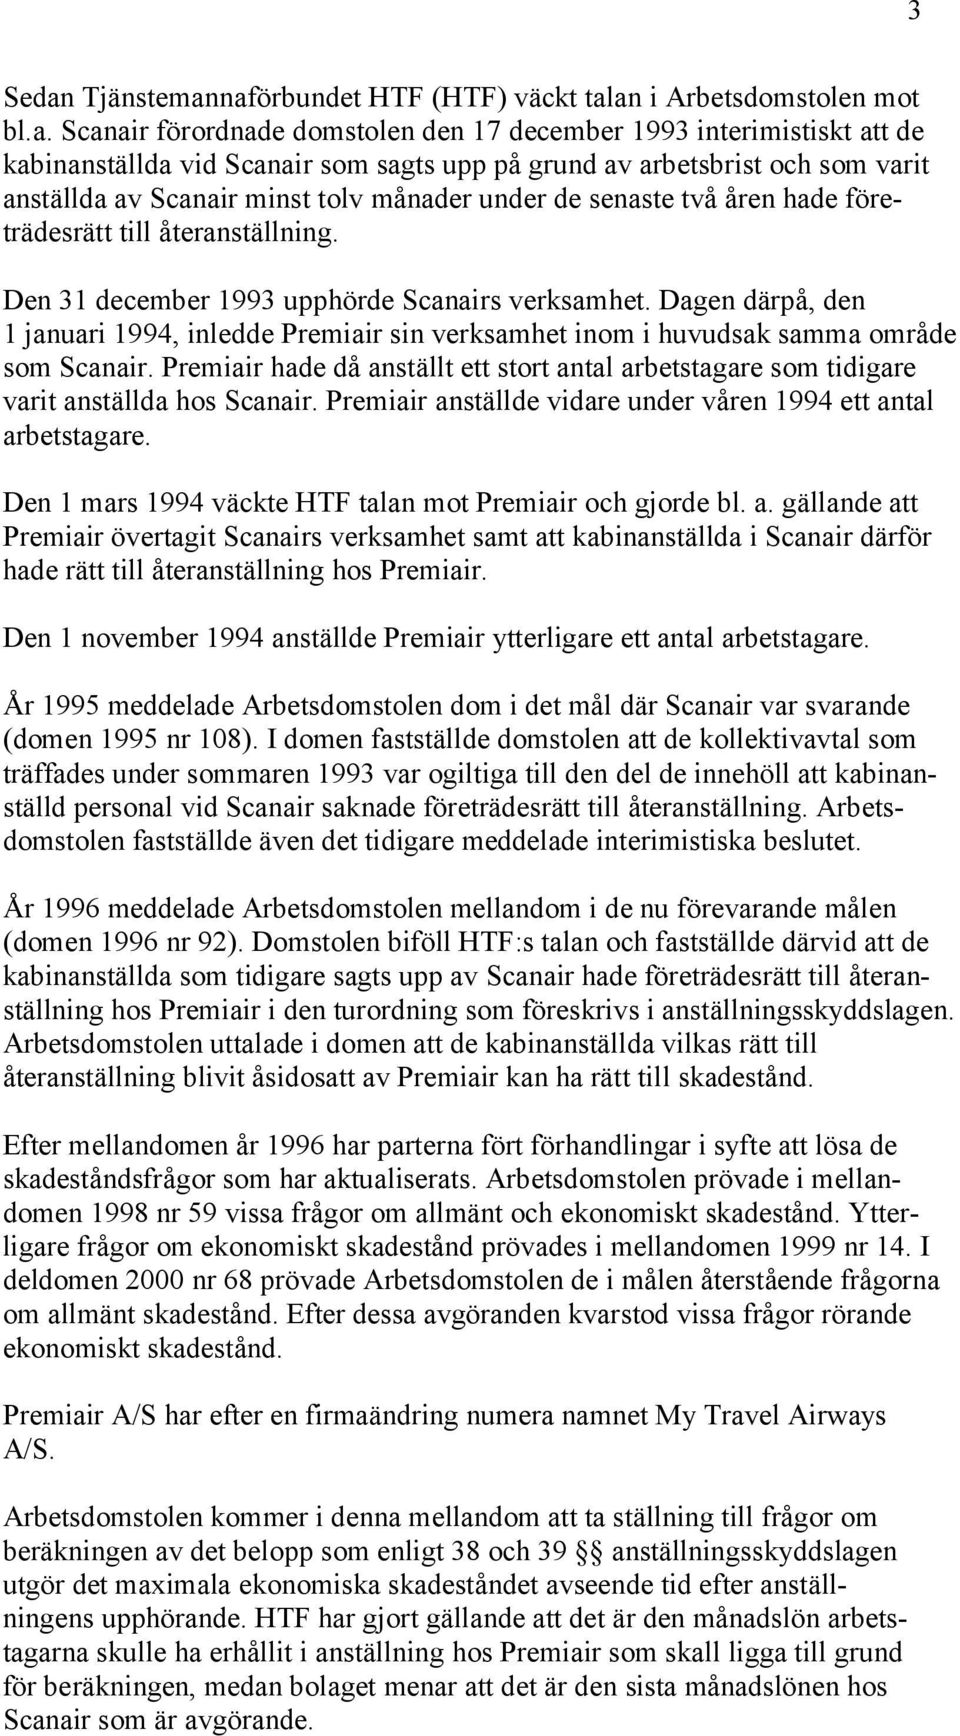 naförbundet HTF (HTF) väckt talan i Arbetsdomstolen mot bl.a. Scanair förordnade domstolen den 17 december 1993 interimistiskt att de kabinanställda vid Scanair som sagts upp på grund av arbetsbrist